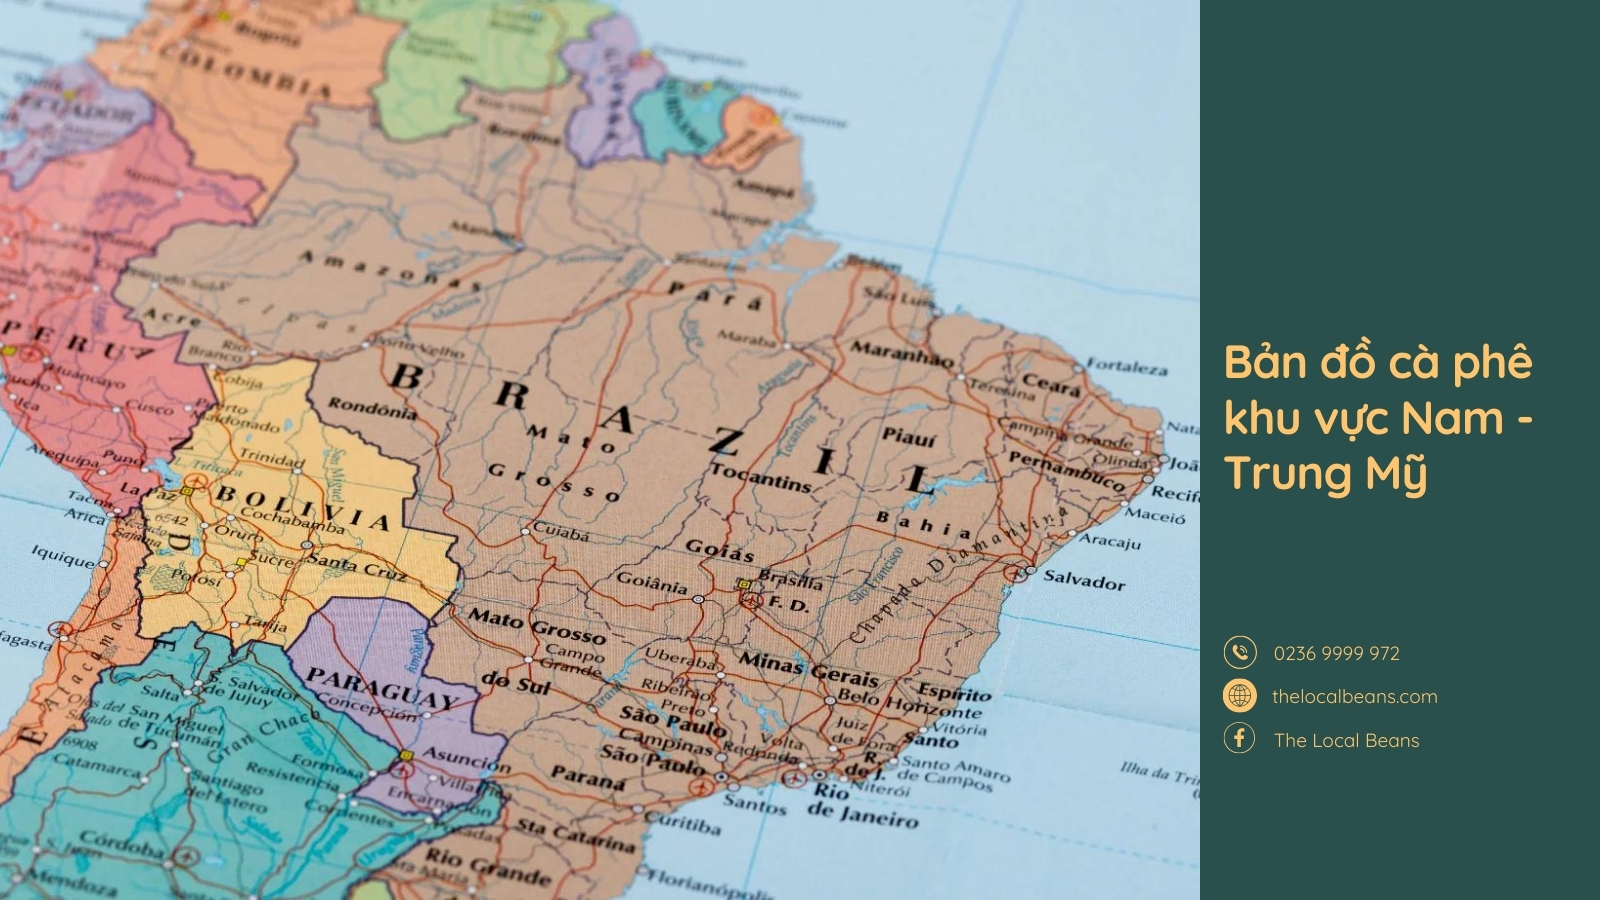 minh hoạ một phần bản đồ cà phê khu vực Nam Trung Mỹ